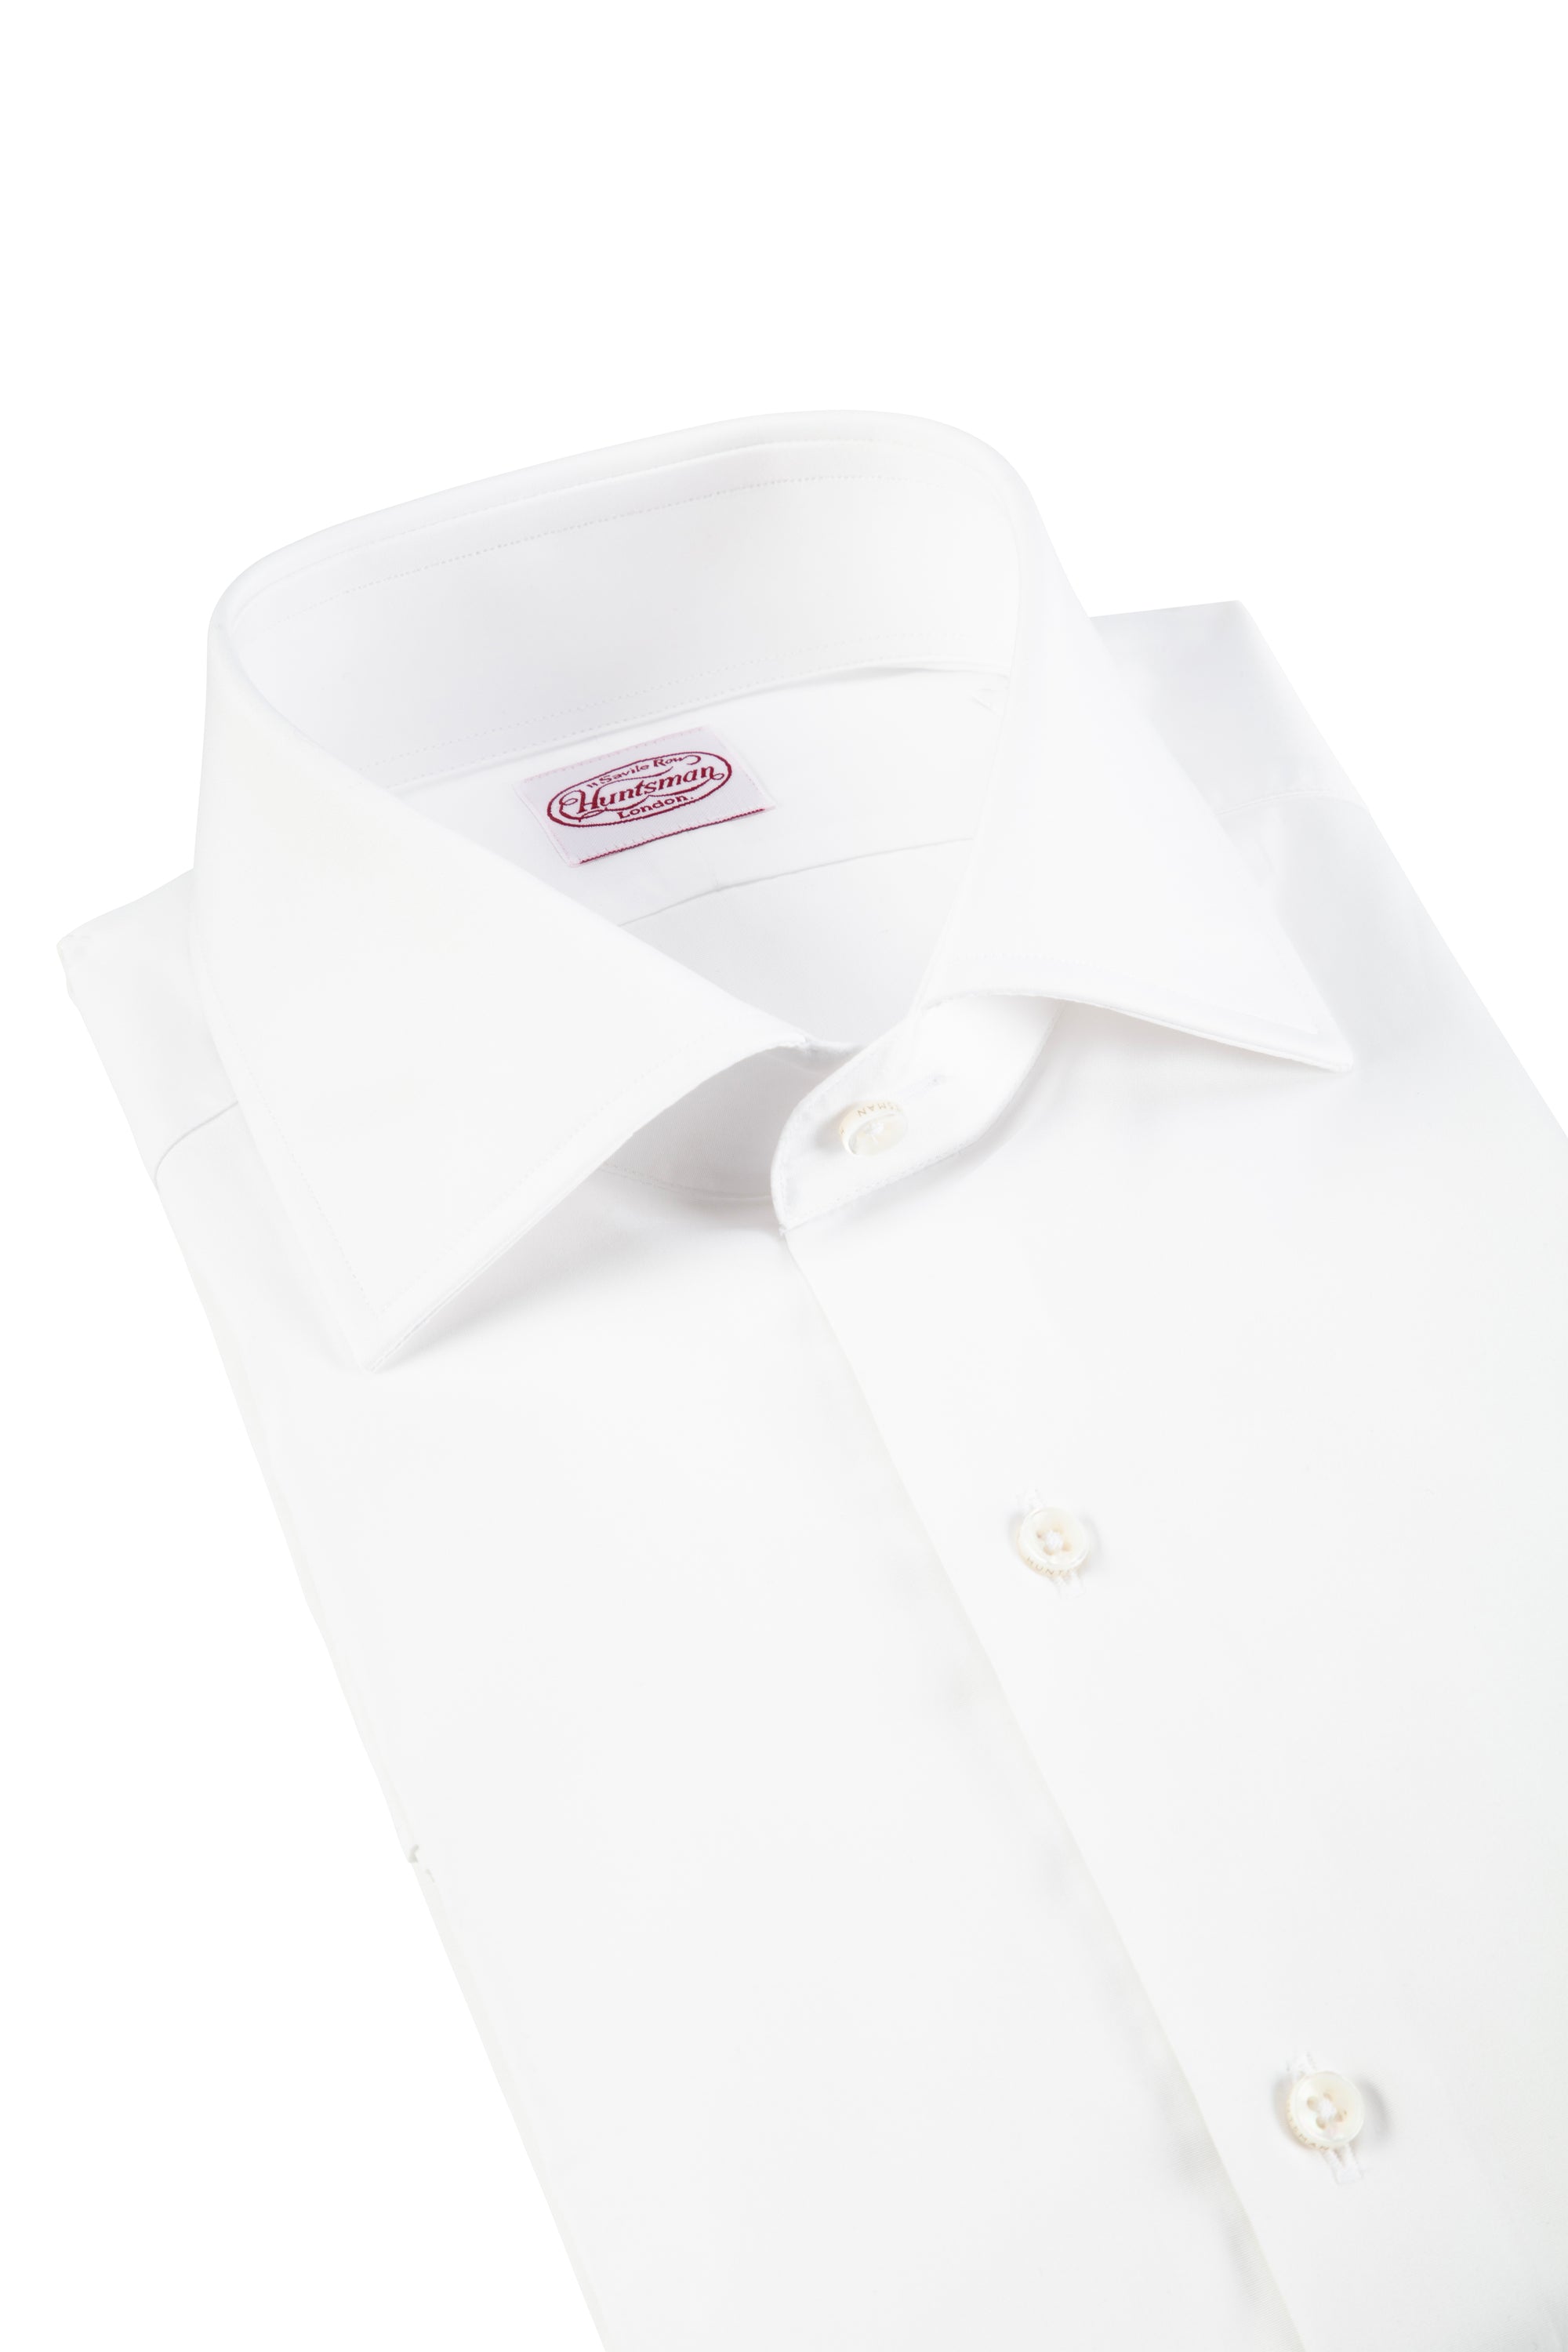 White Cotton Single Cuff Shirt